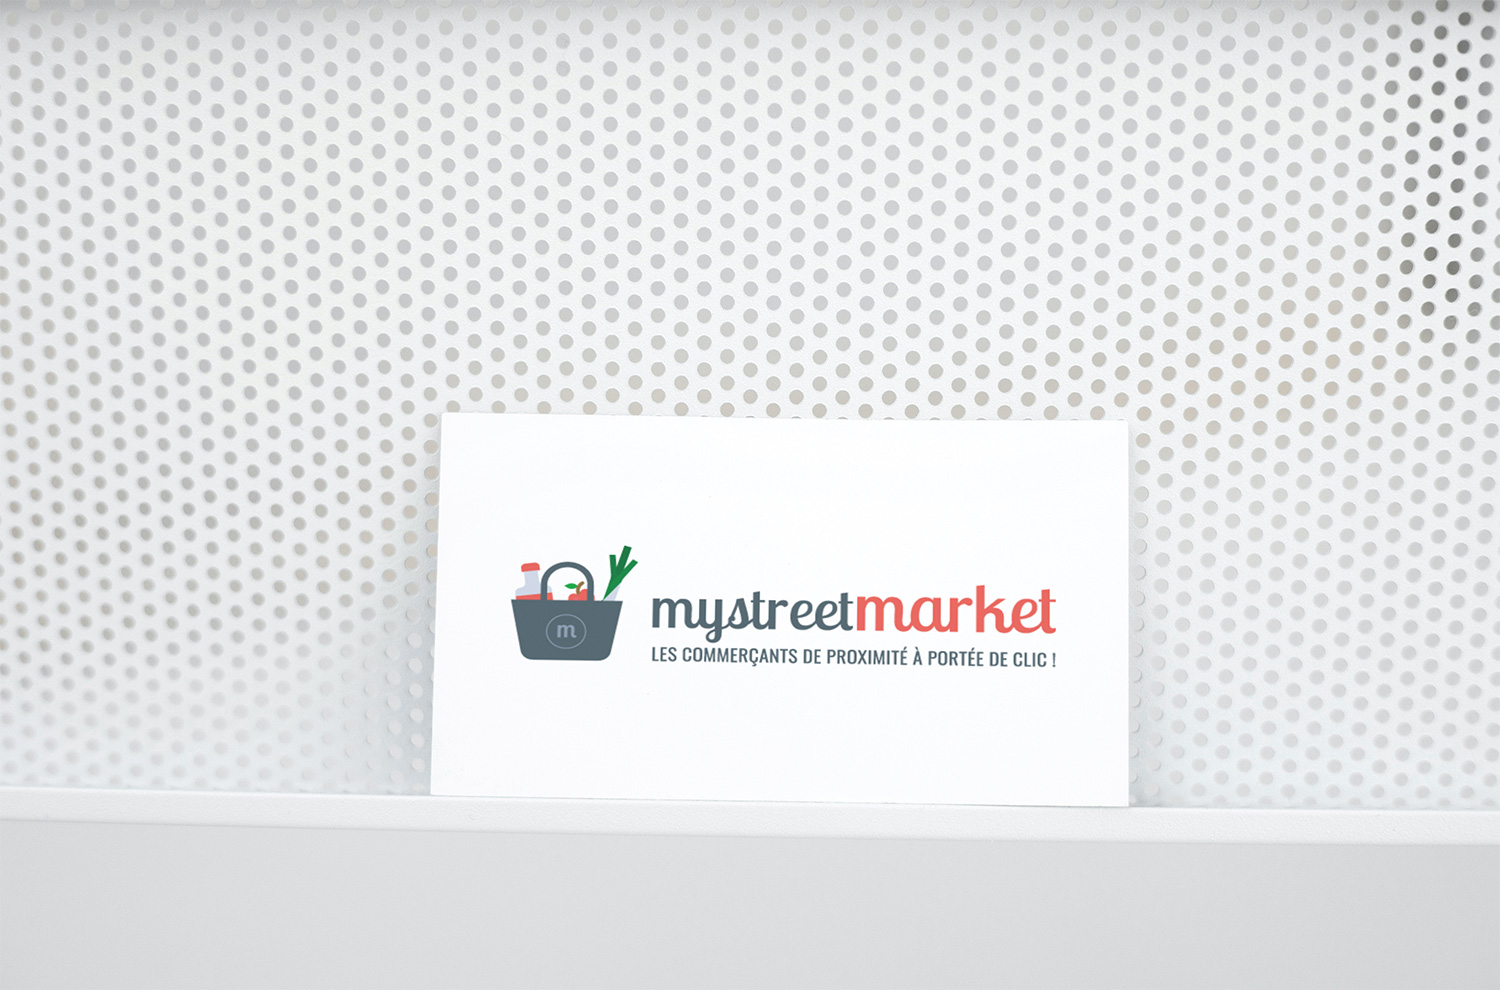 mystreetmarket-logo